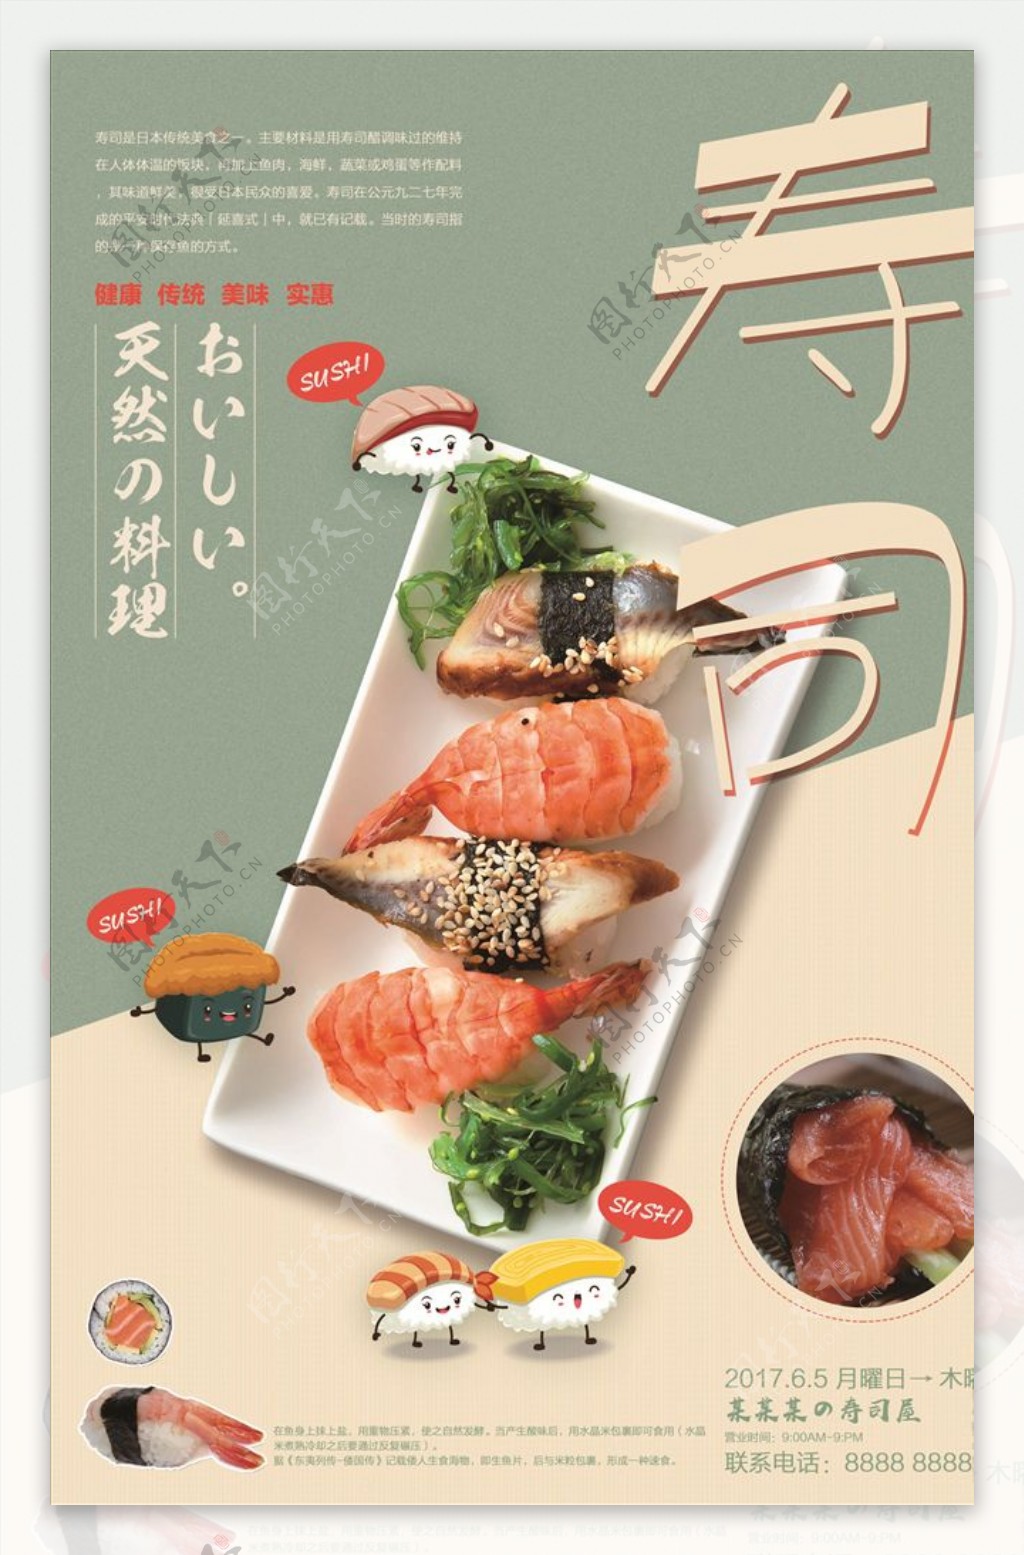 精美简介大气日式寿司海报